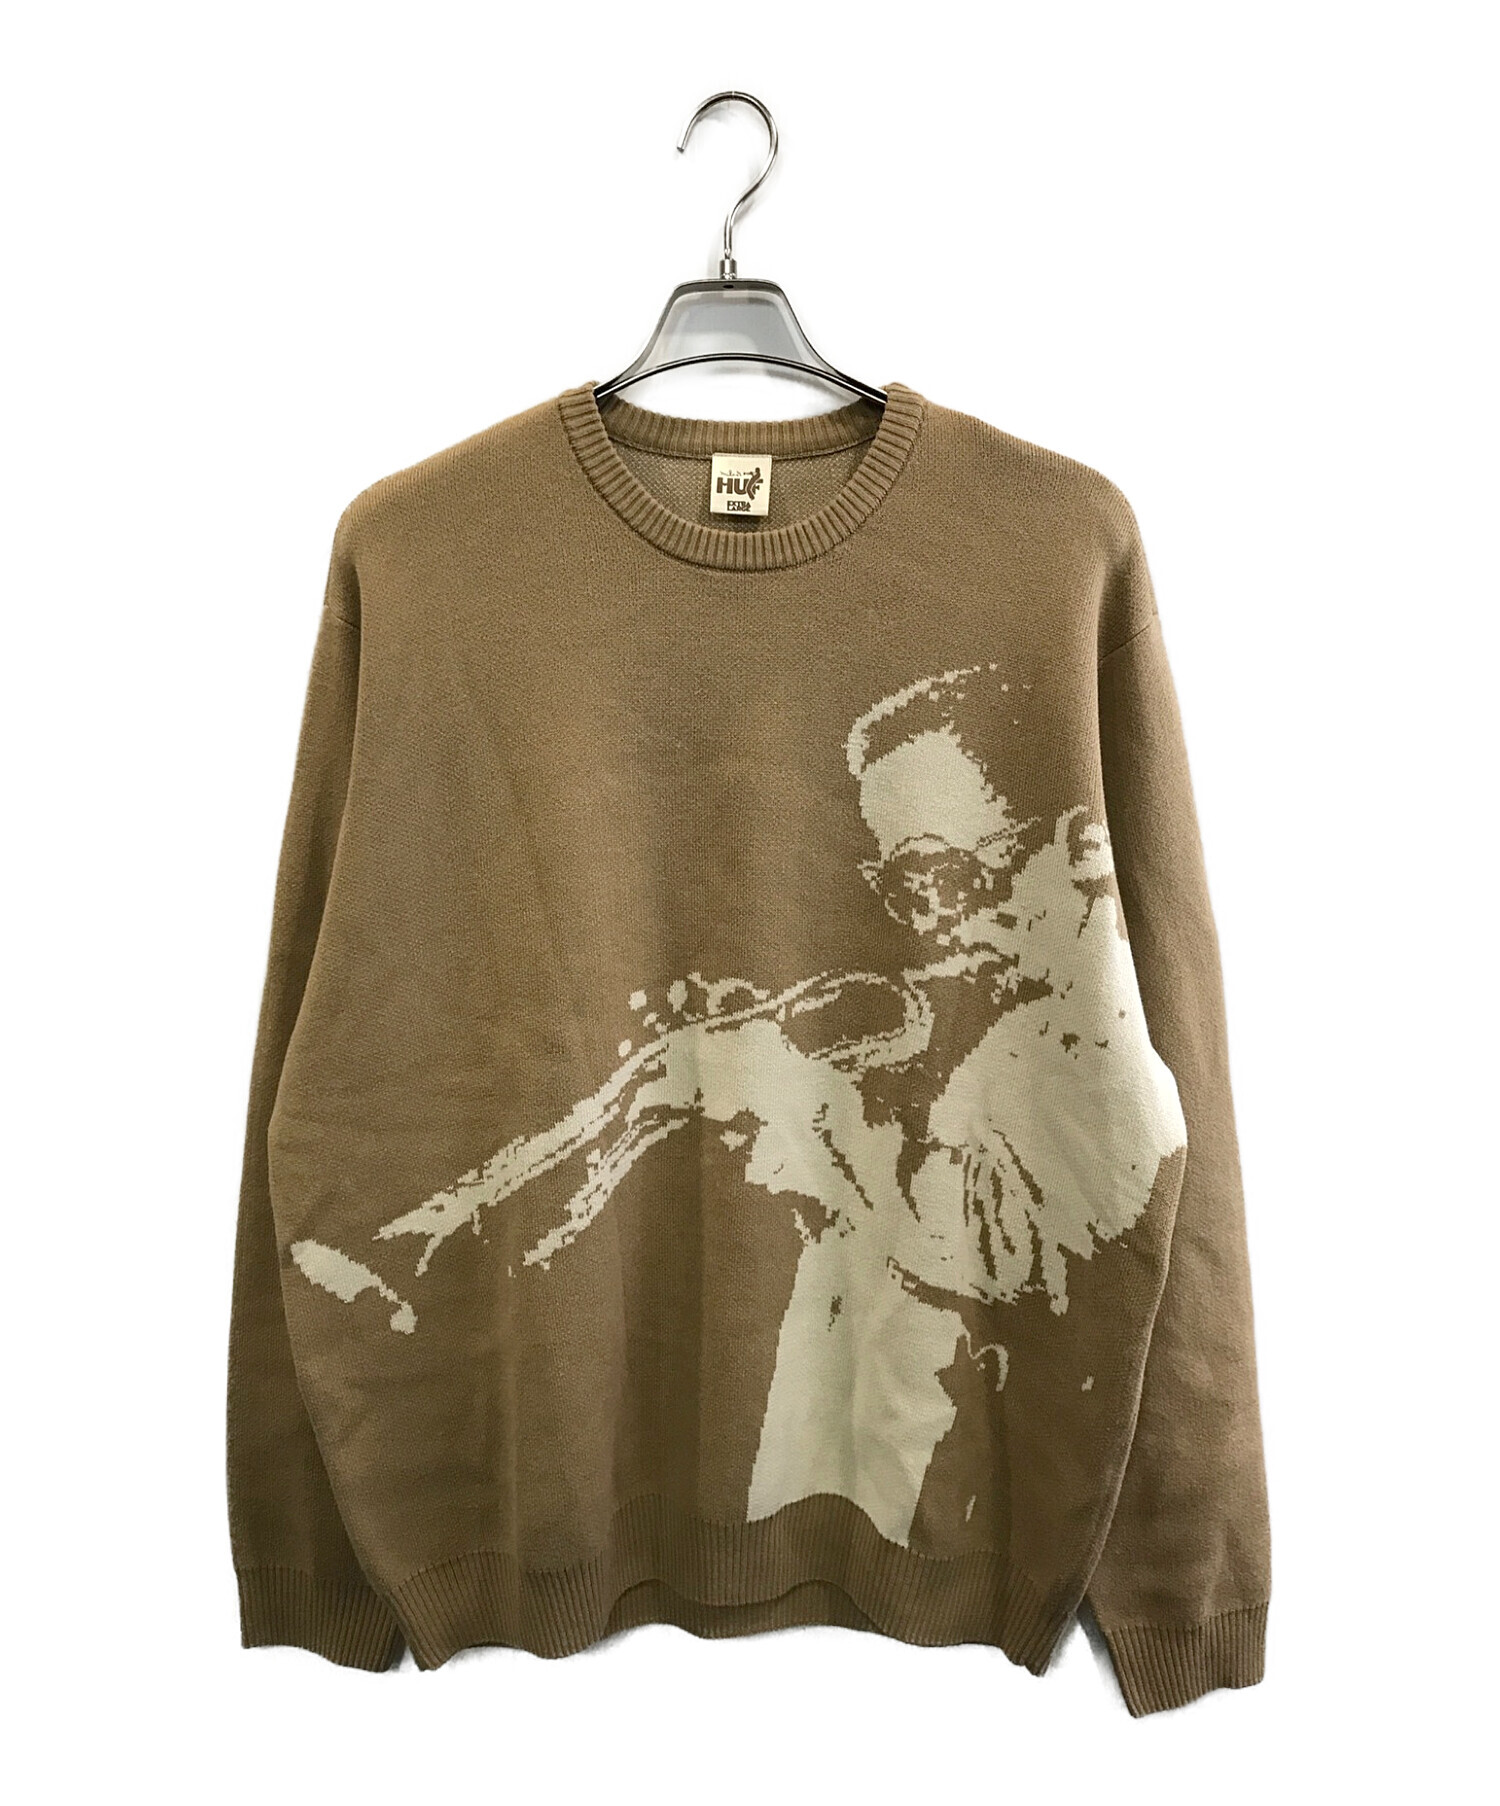 HUF (ハフ) Mr Freedom X Jacquard Sweater ブラウン サイズ:XL